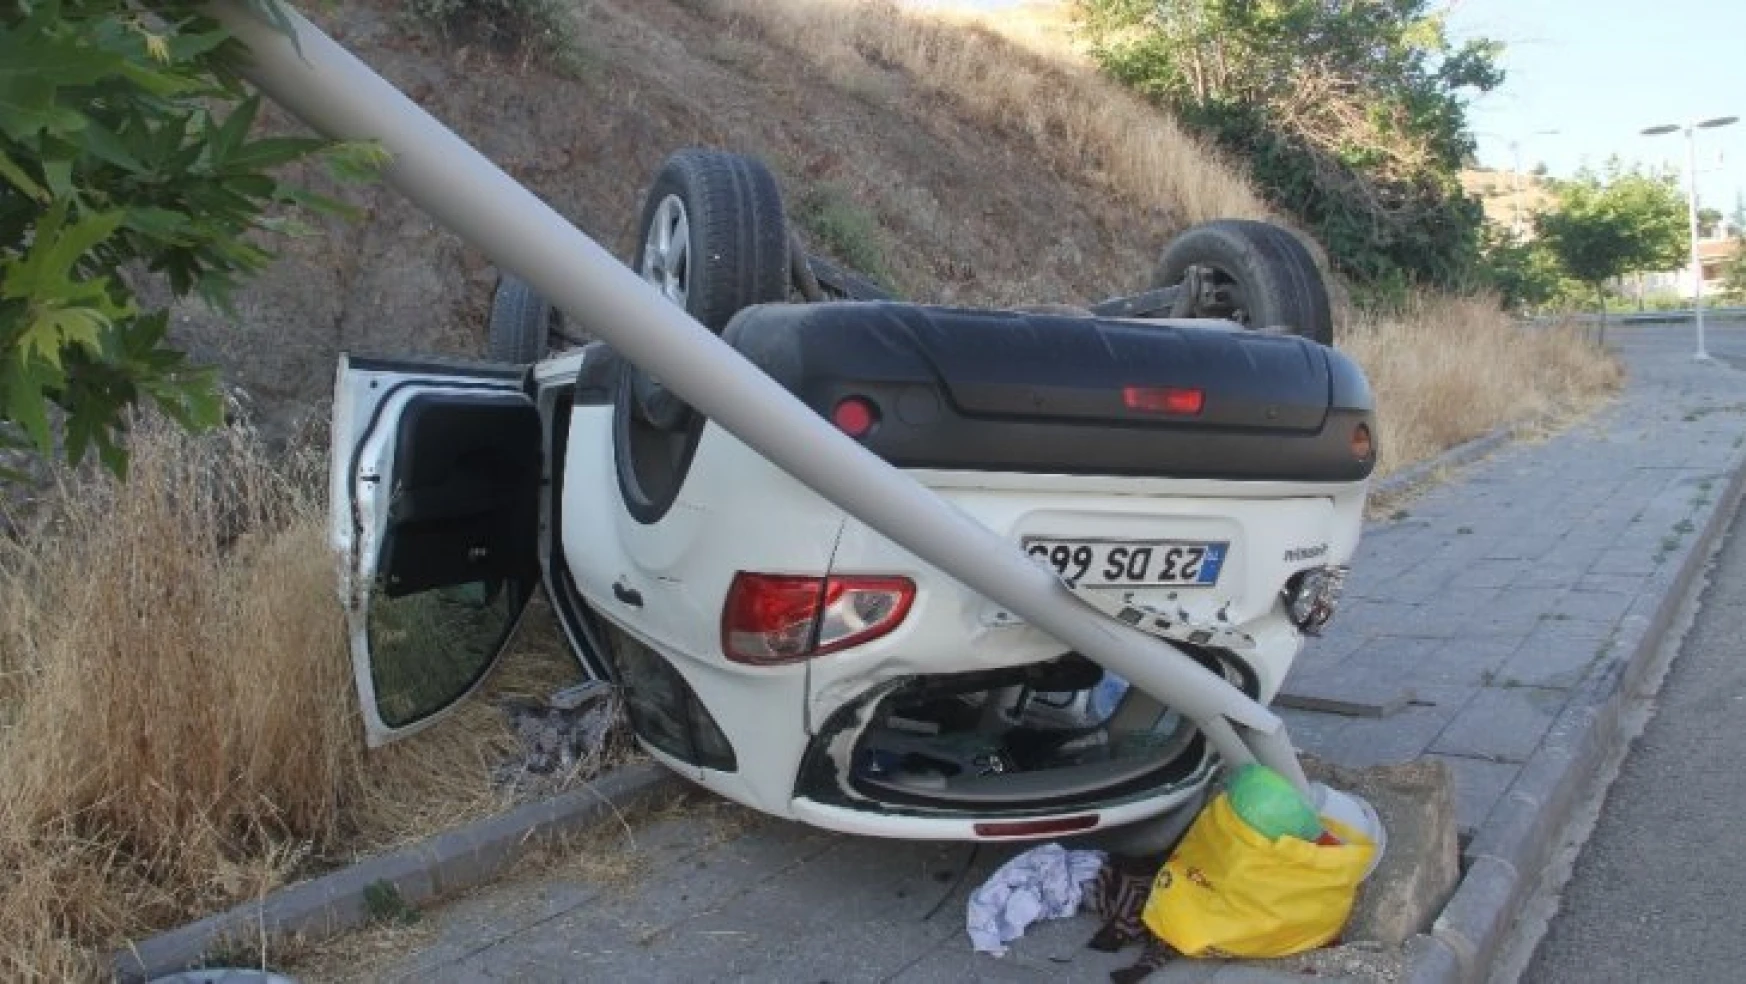 Harput Yolunda Direğe Çarpan Otomobil Ters Döndü, 5 Yaralı